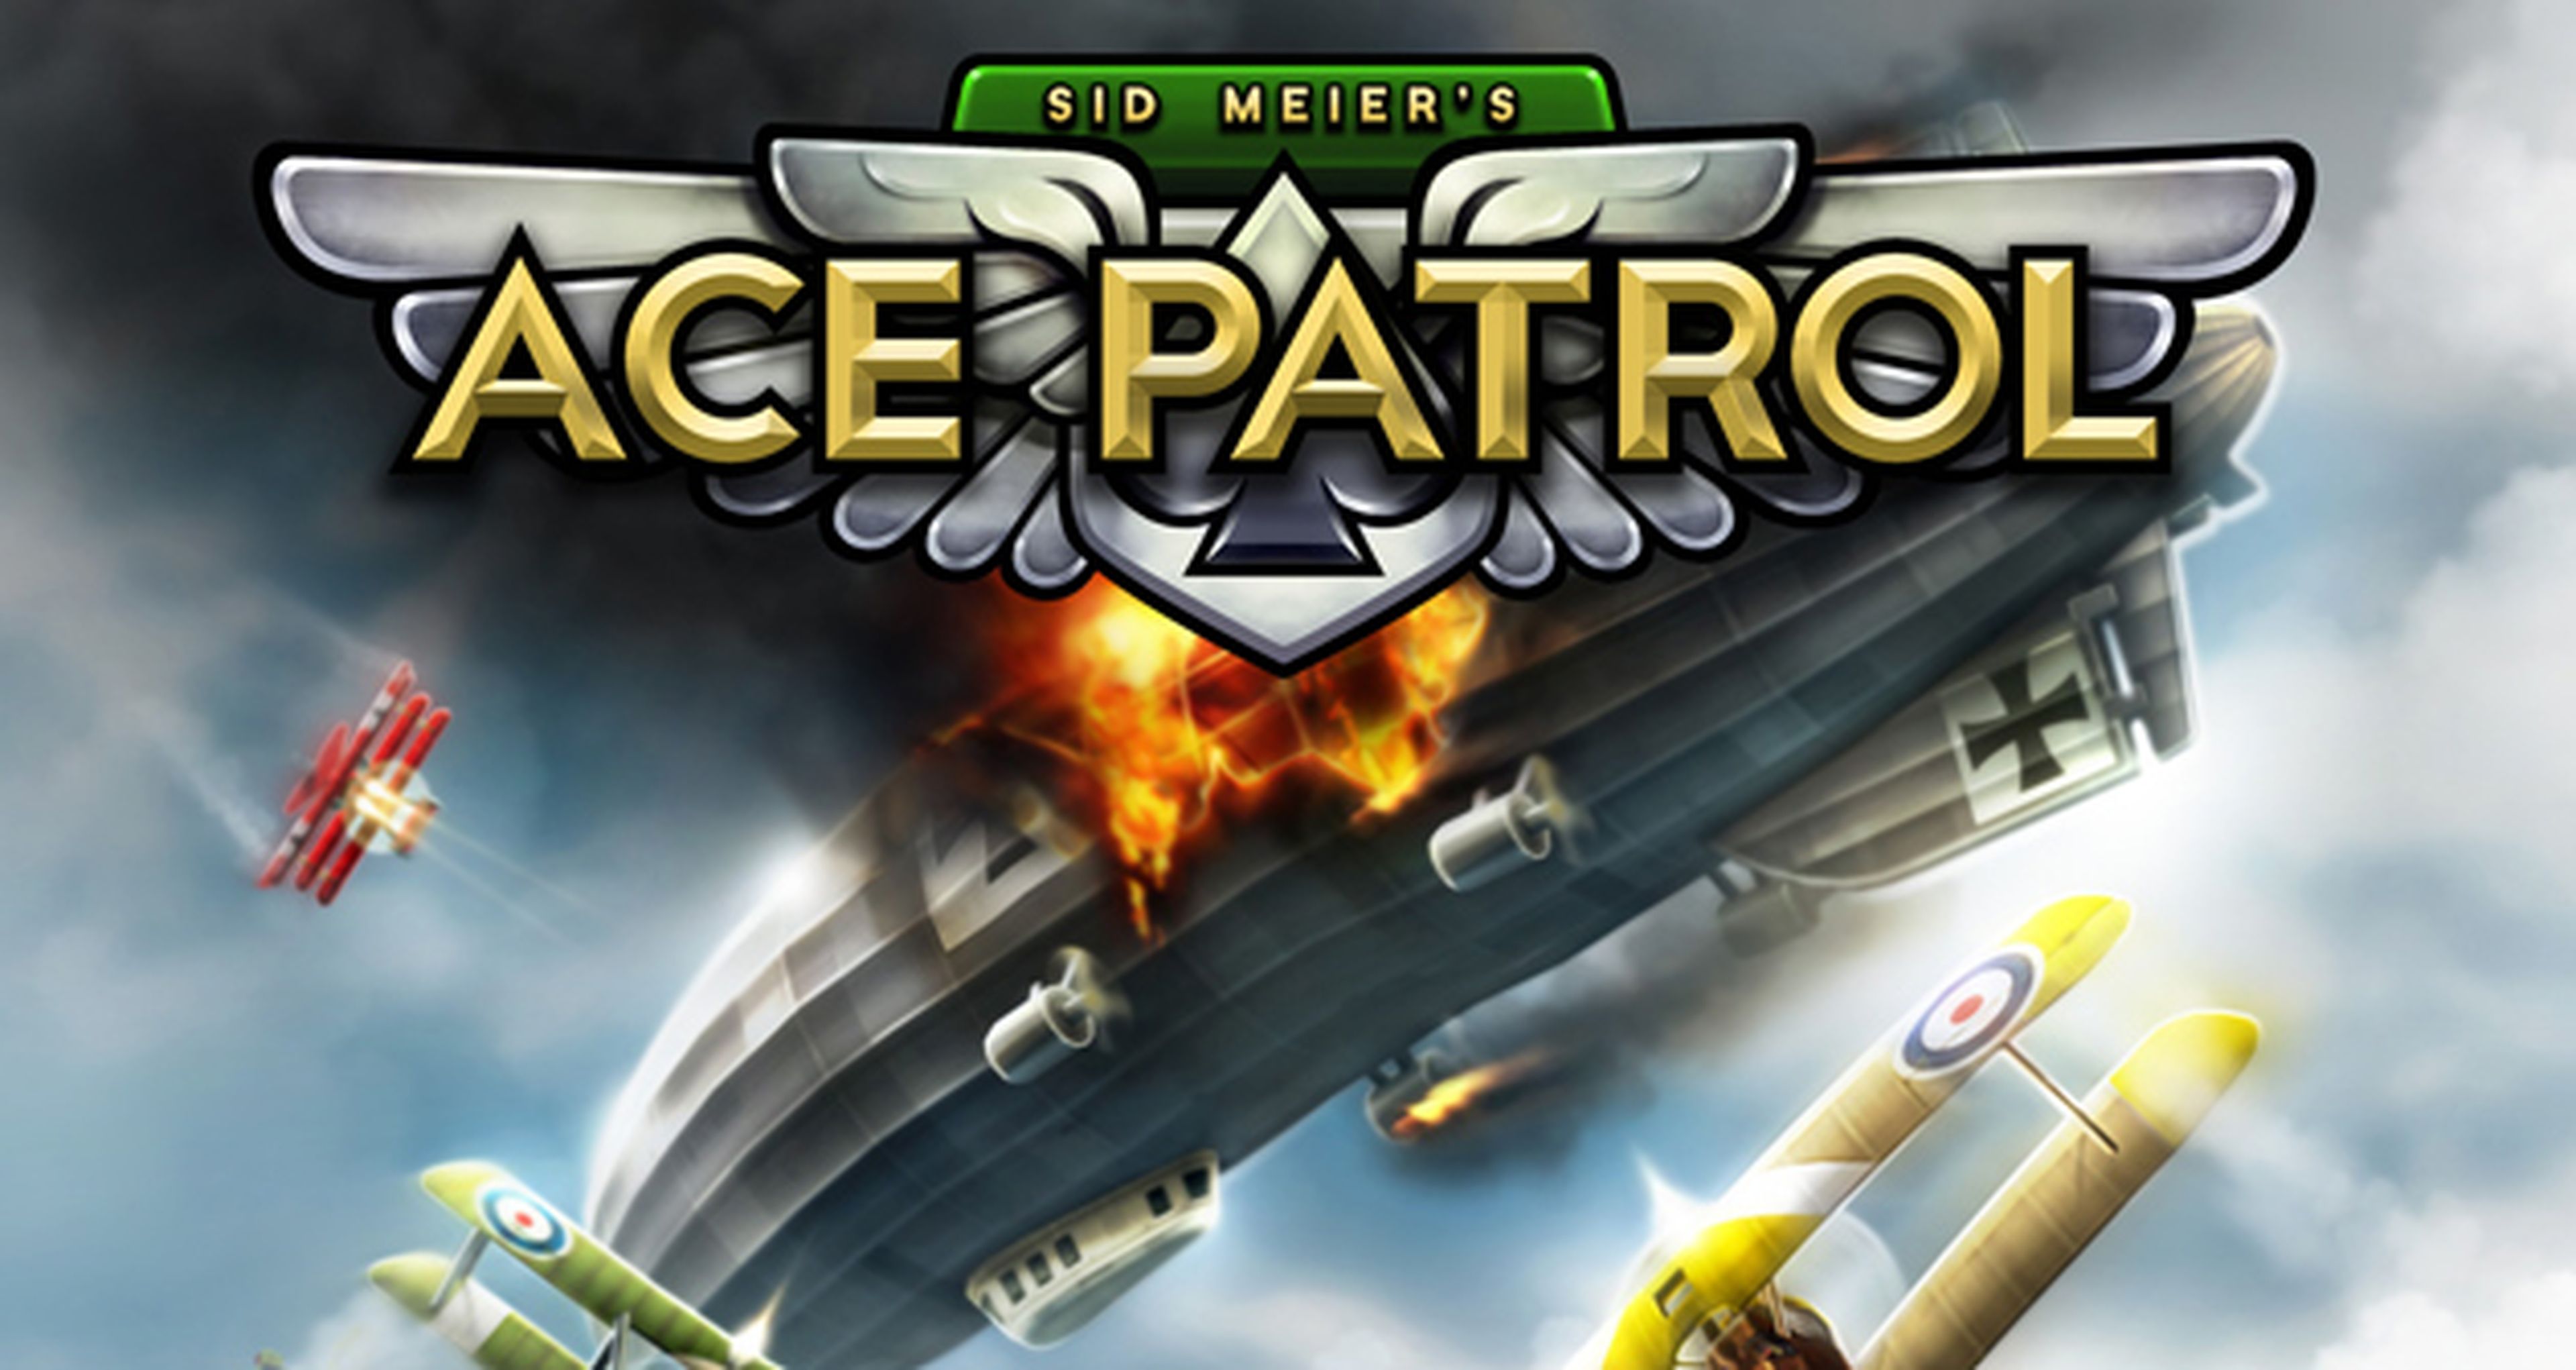 Ace Patrol, lo nuevo de Sid Meier para iOS